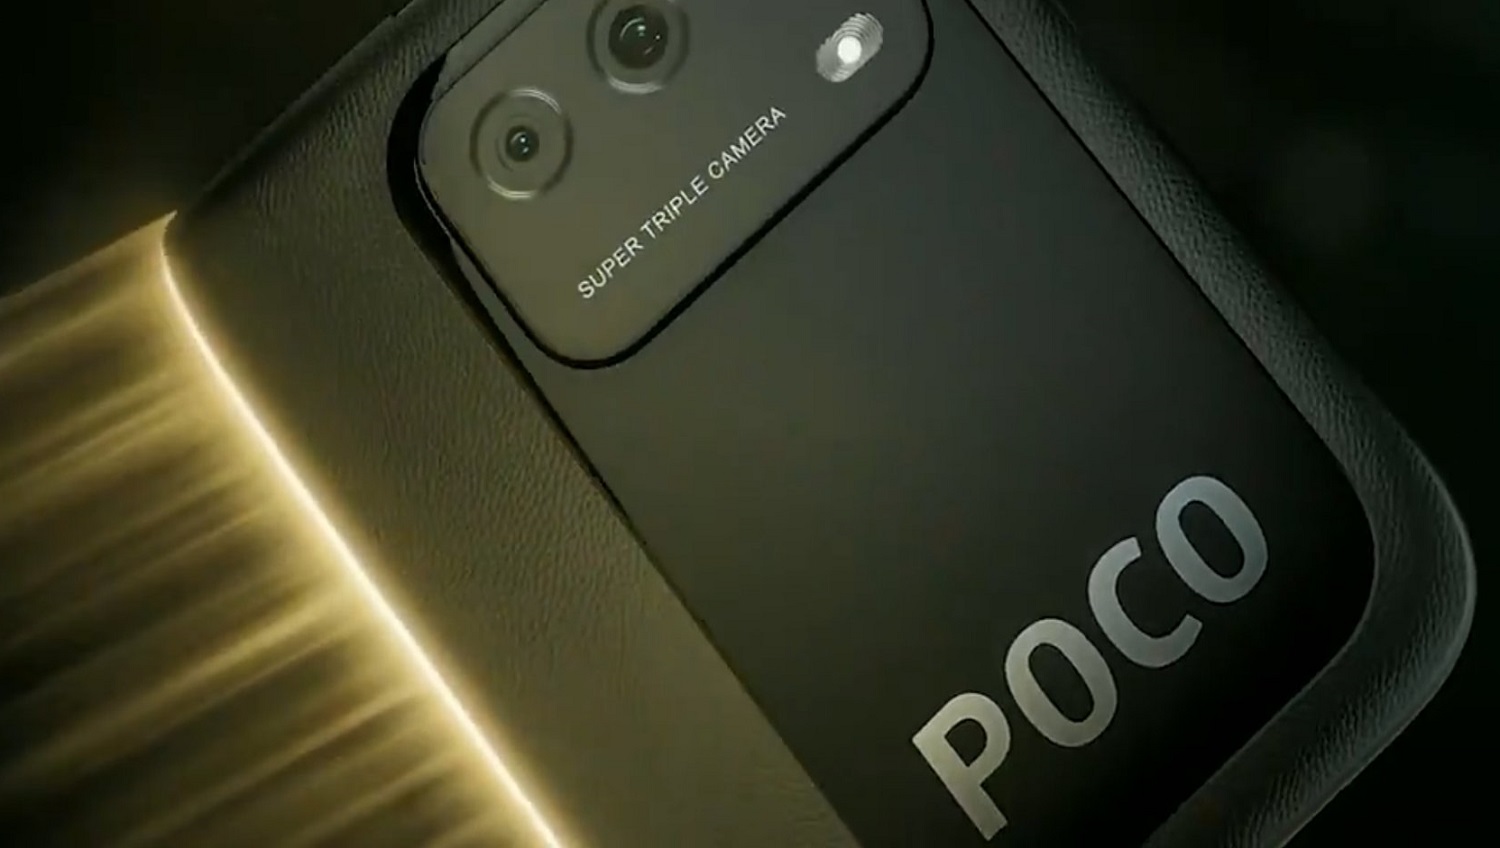 Xiaomi confirma várias especificações Poco M3 antes do lançamento em 24 de novembro - NotebookCheck.net News